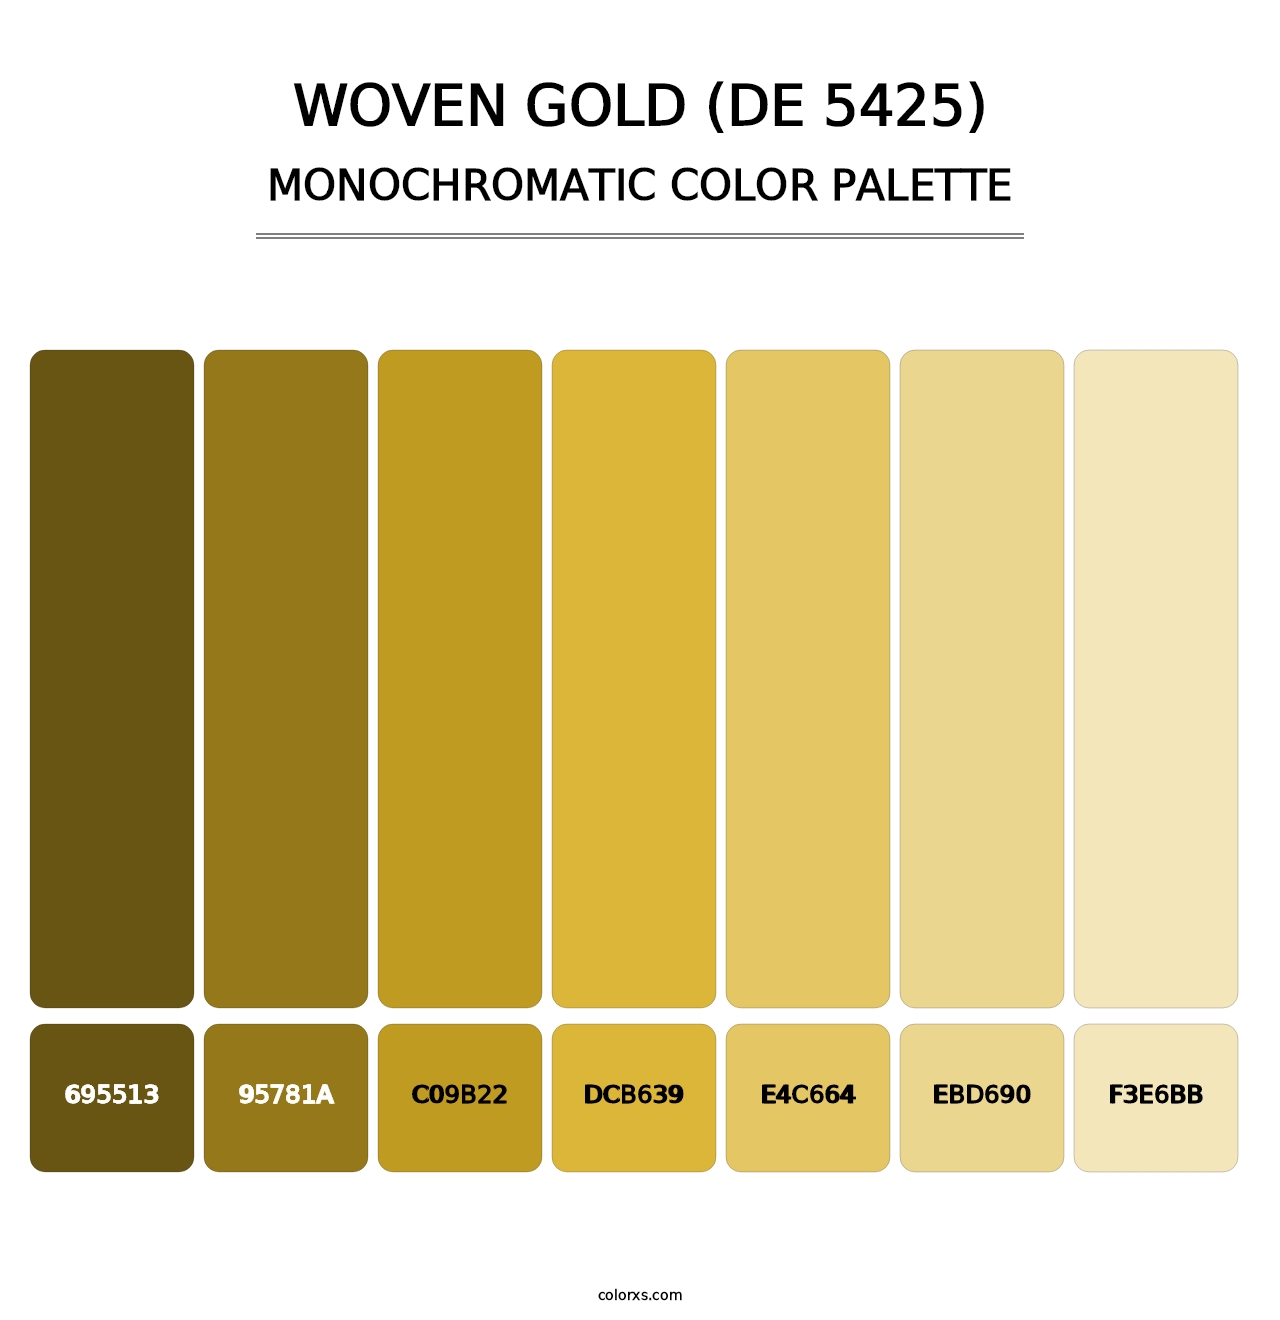 Woven Gold (DE 5425) - Monochromatic Color Palette